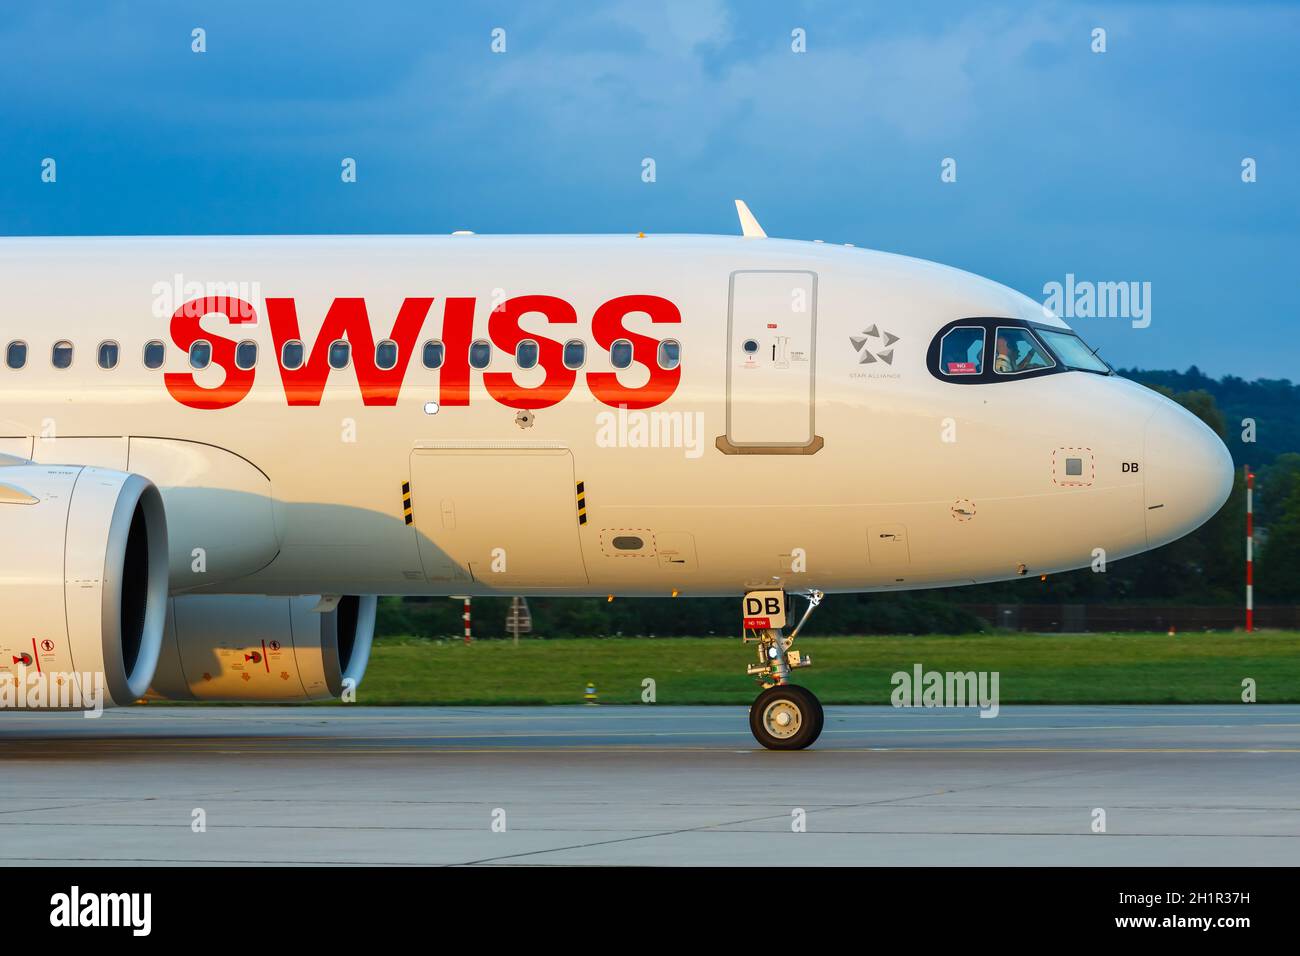 Zurich, Switzerland - July 22, 2020: Swiss Airbus A320neo airplane at Zurich Airport (ZRH) in Switzerland. Airbus is a European aircraft manufacturer Stock Photo